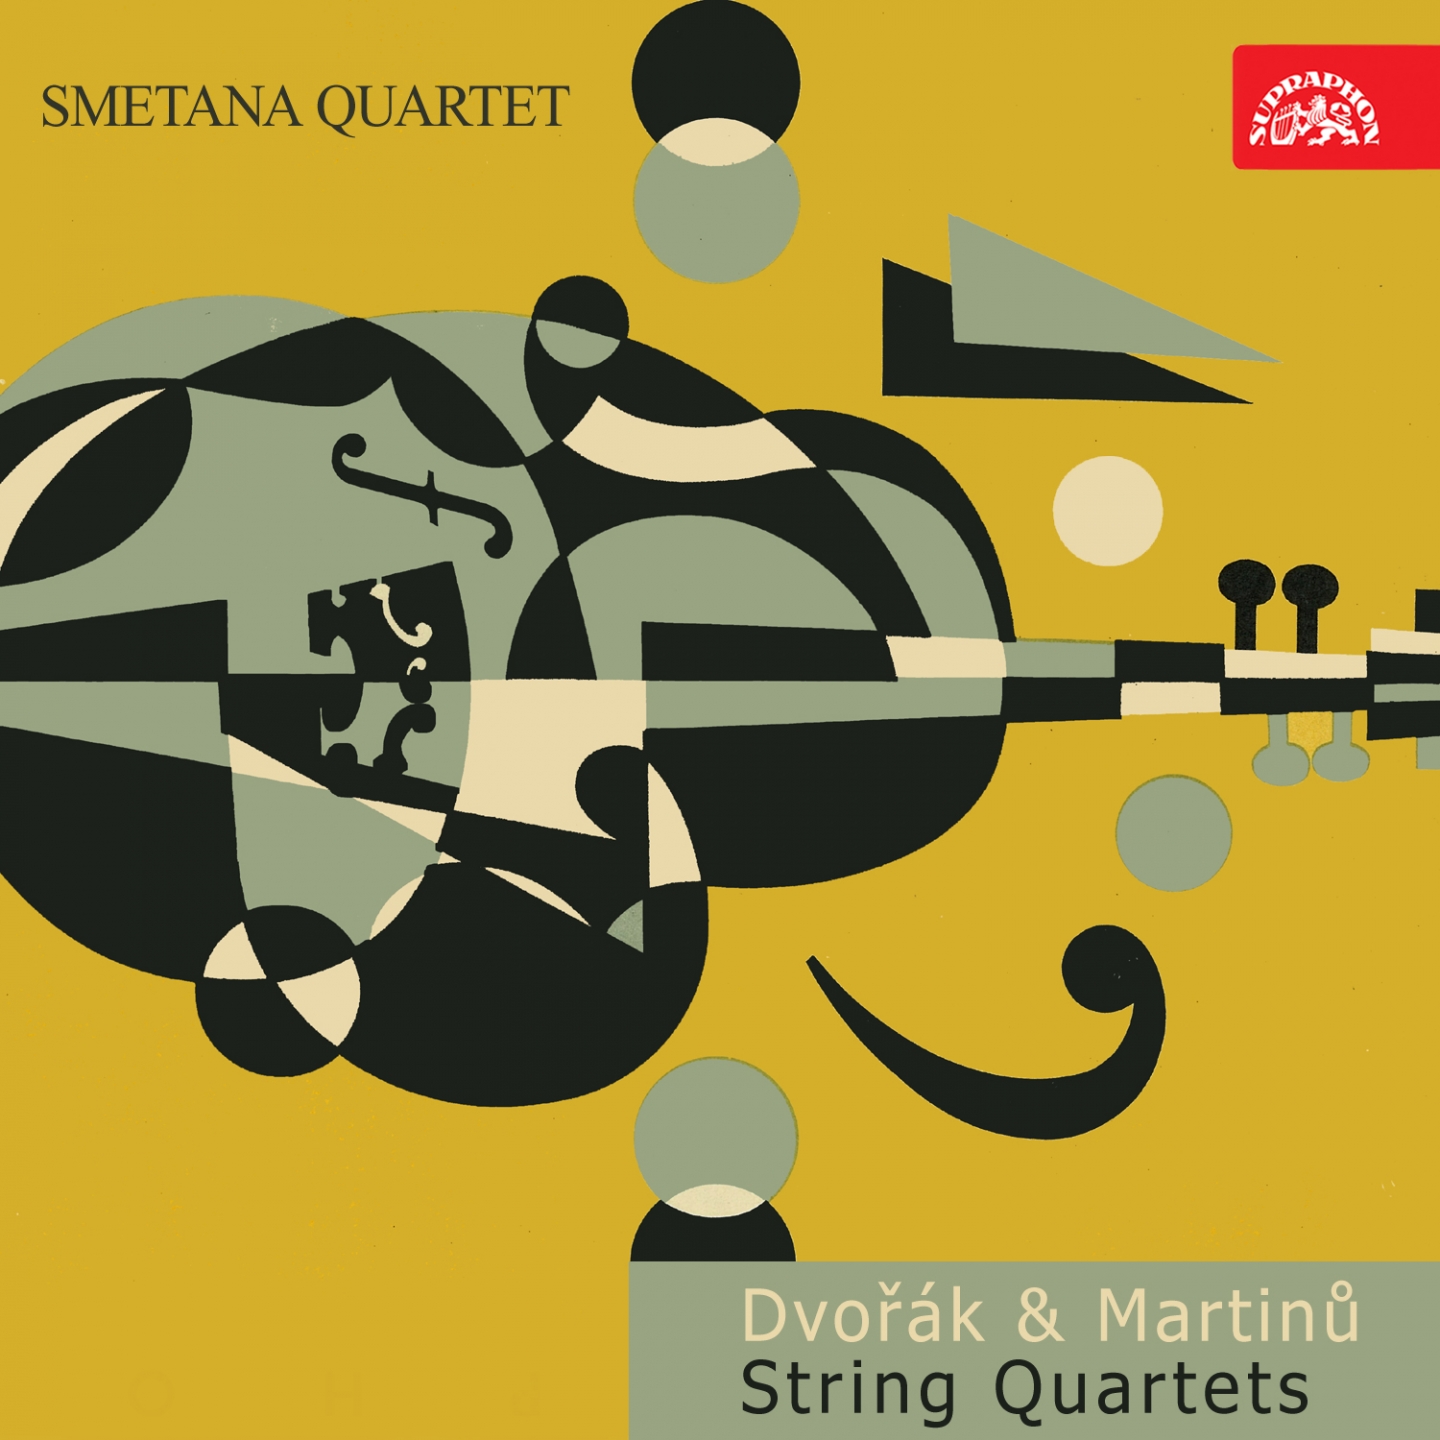 Dvoa k, Martin: String Quartets